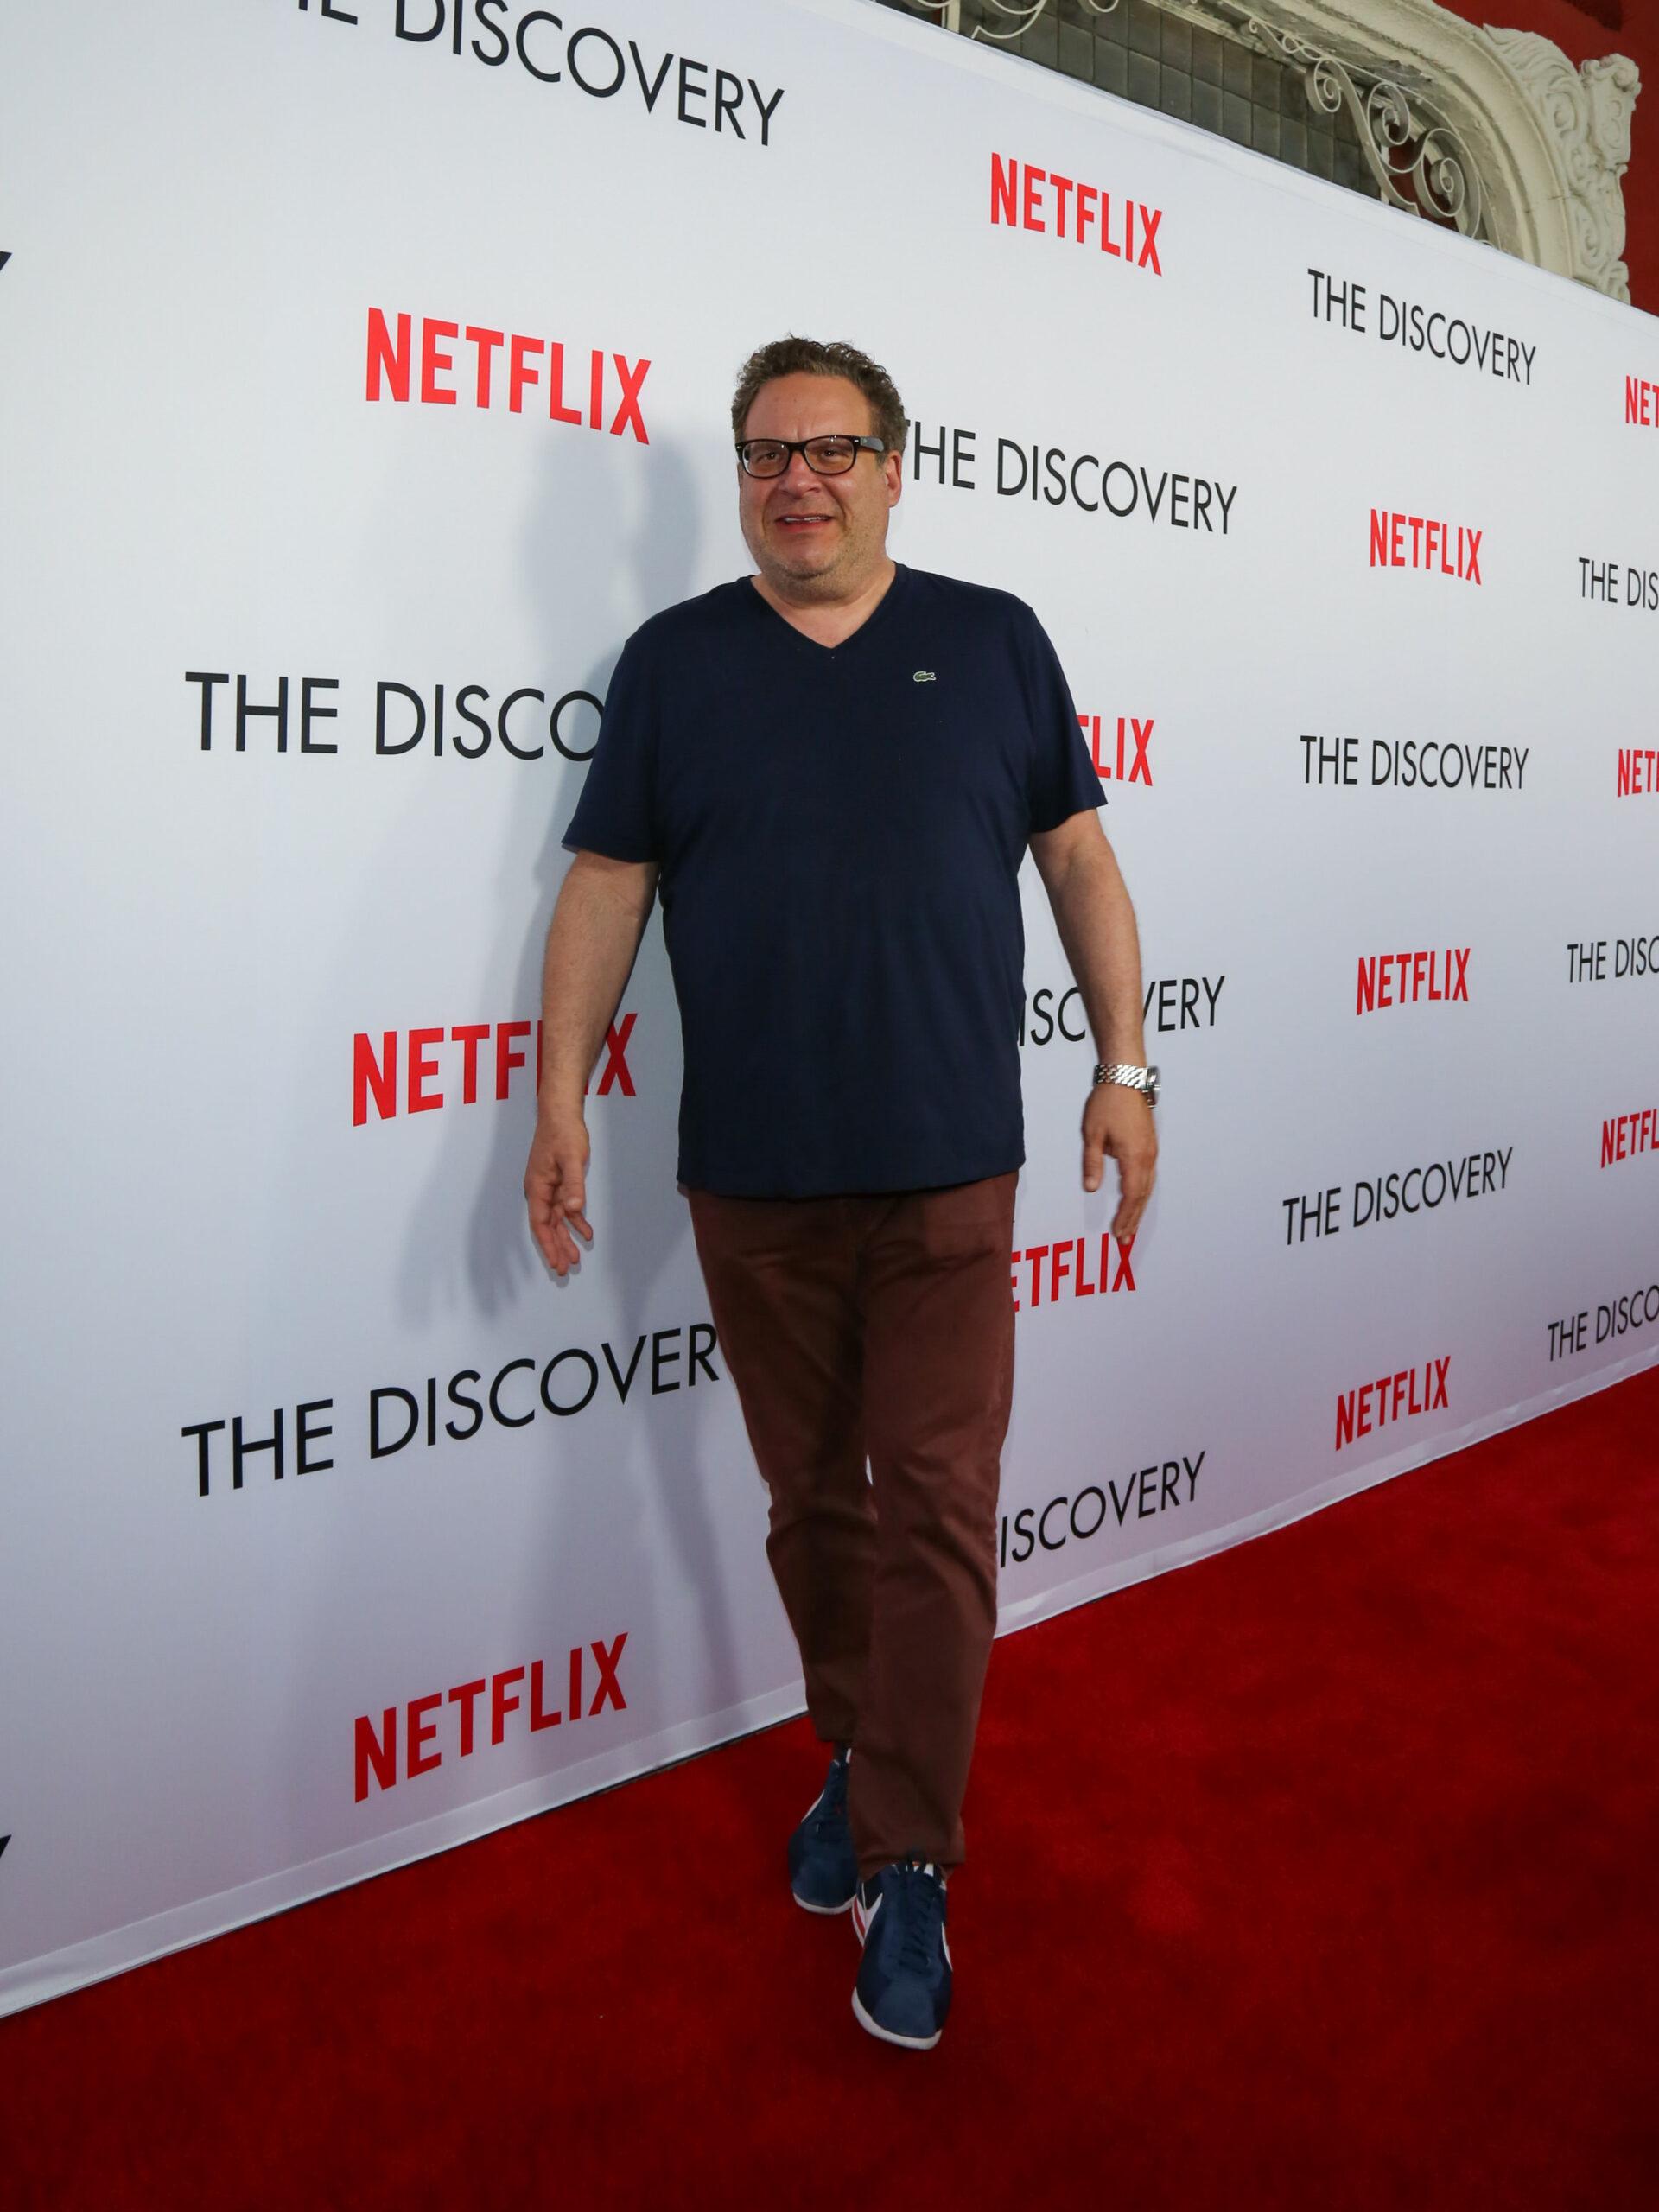 Premiere Of Netflix apos s apos The Discovery apos